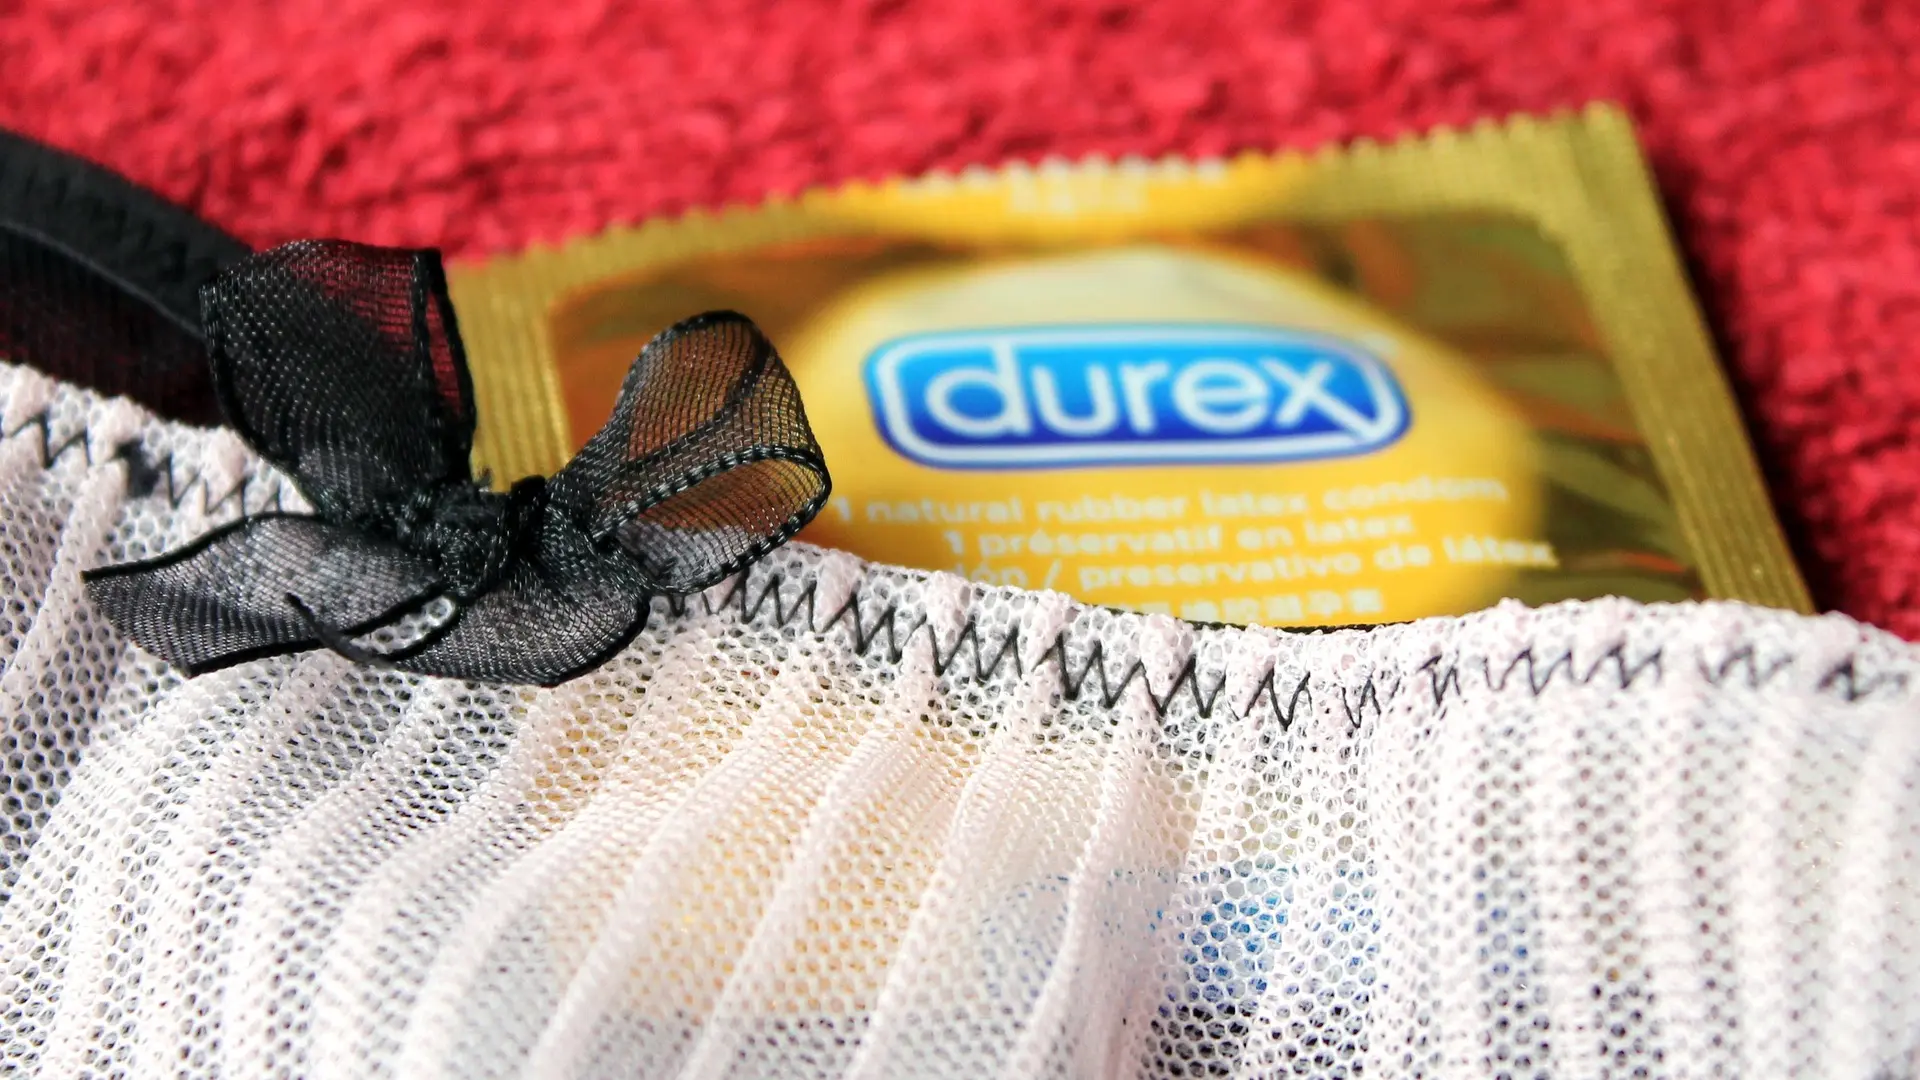 kondomi durex pixabay-666ed02be99a4.webp